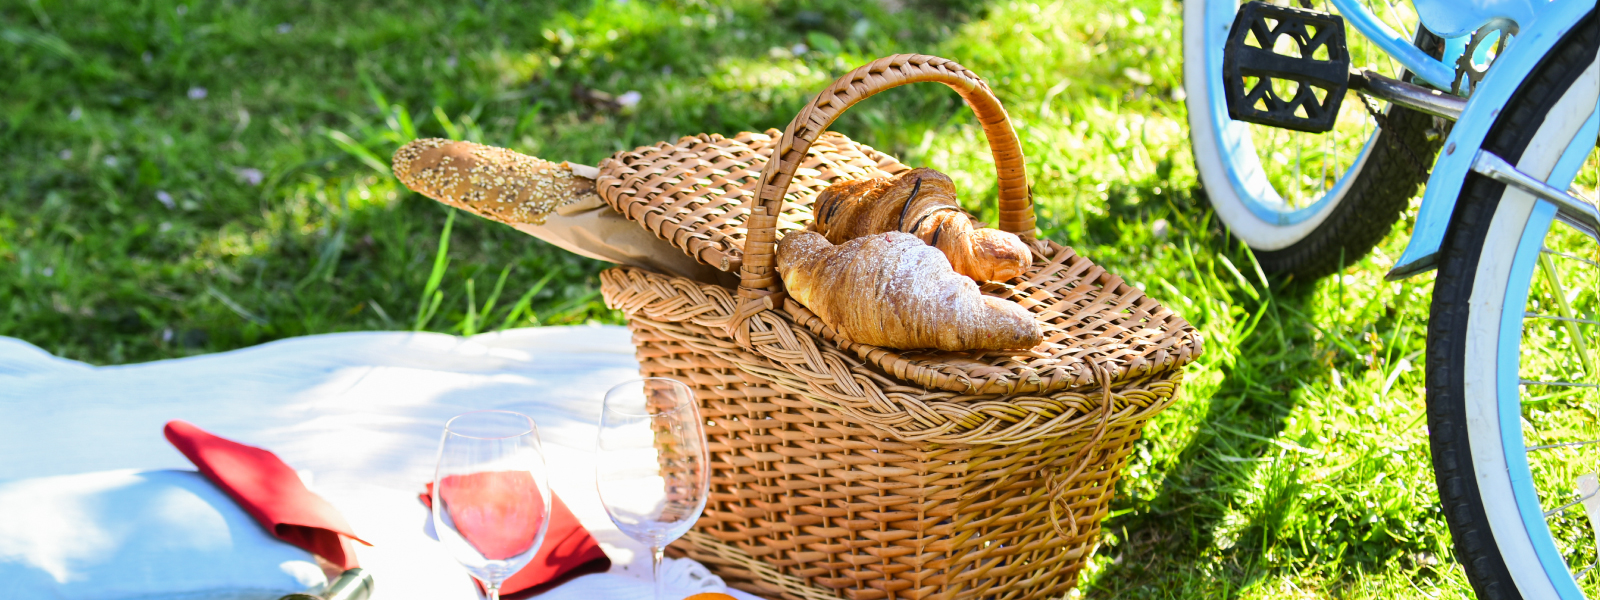 A picnic basket next to a bike